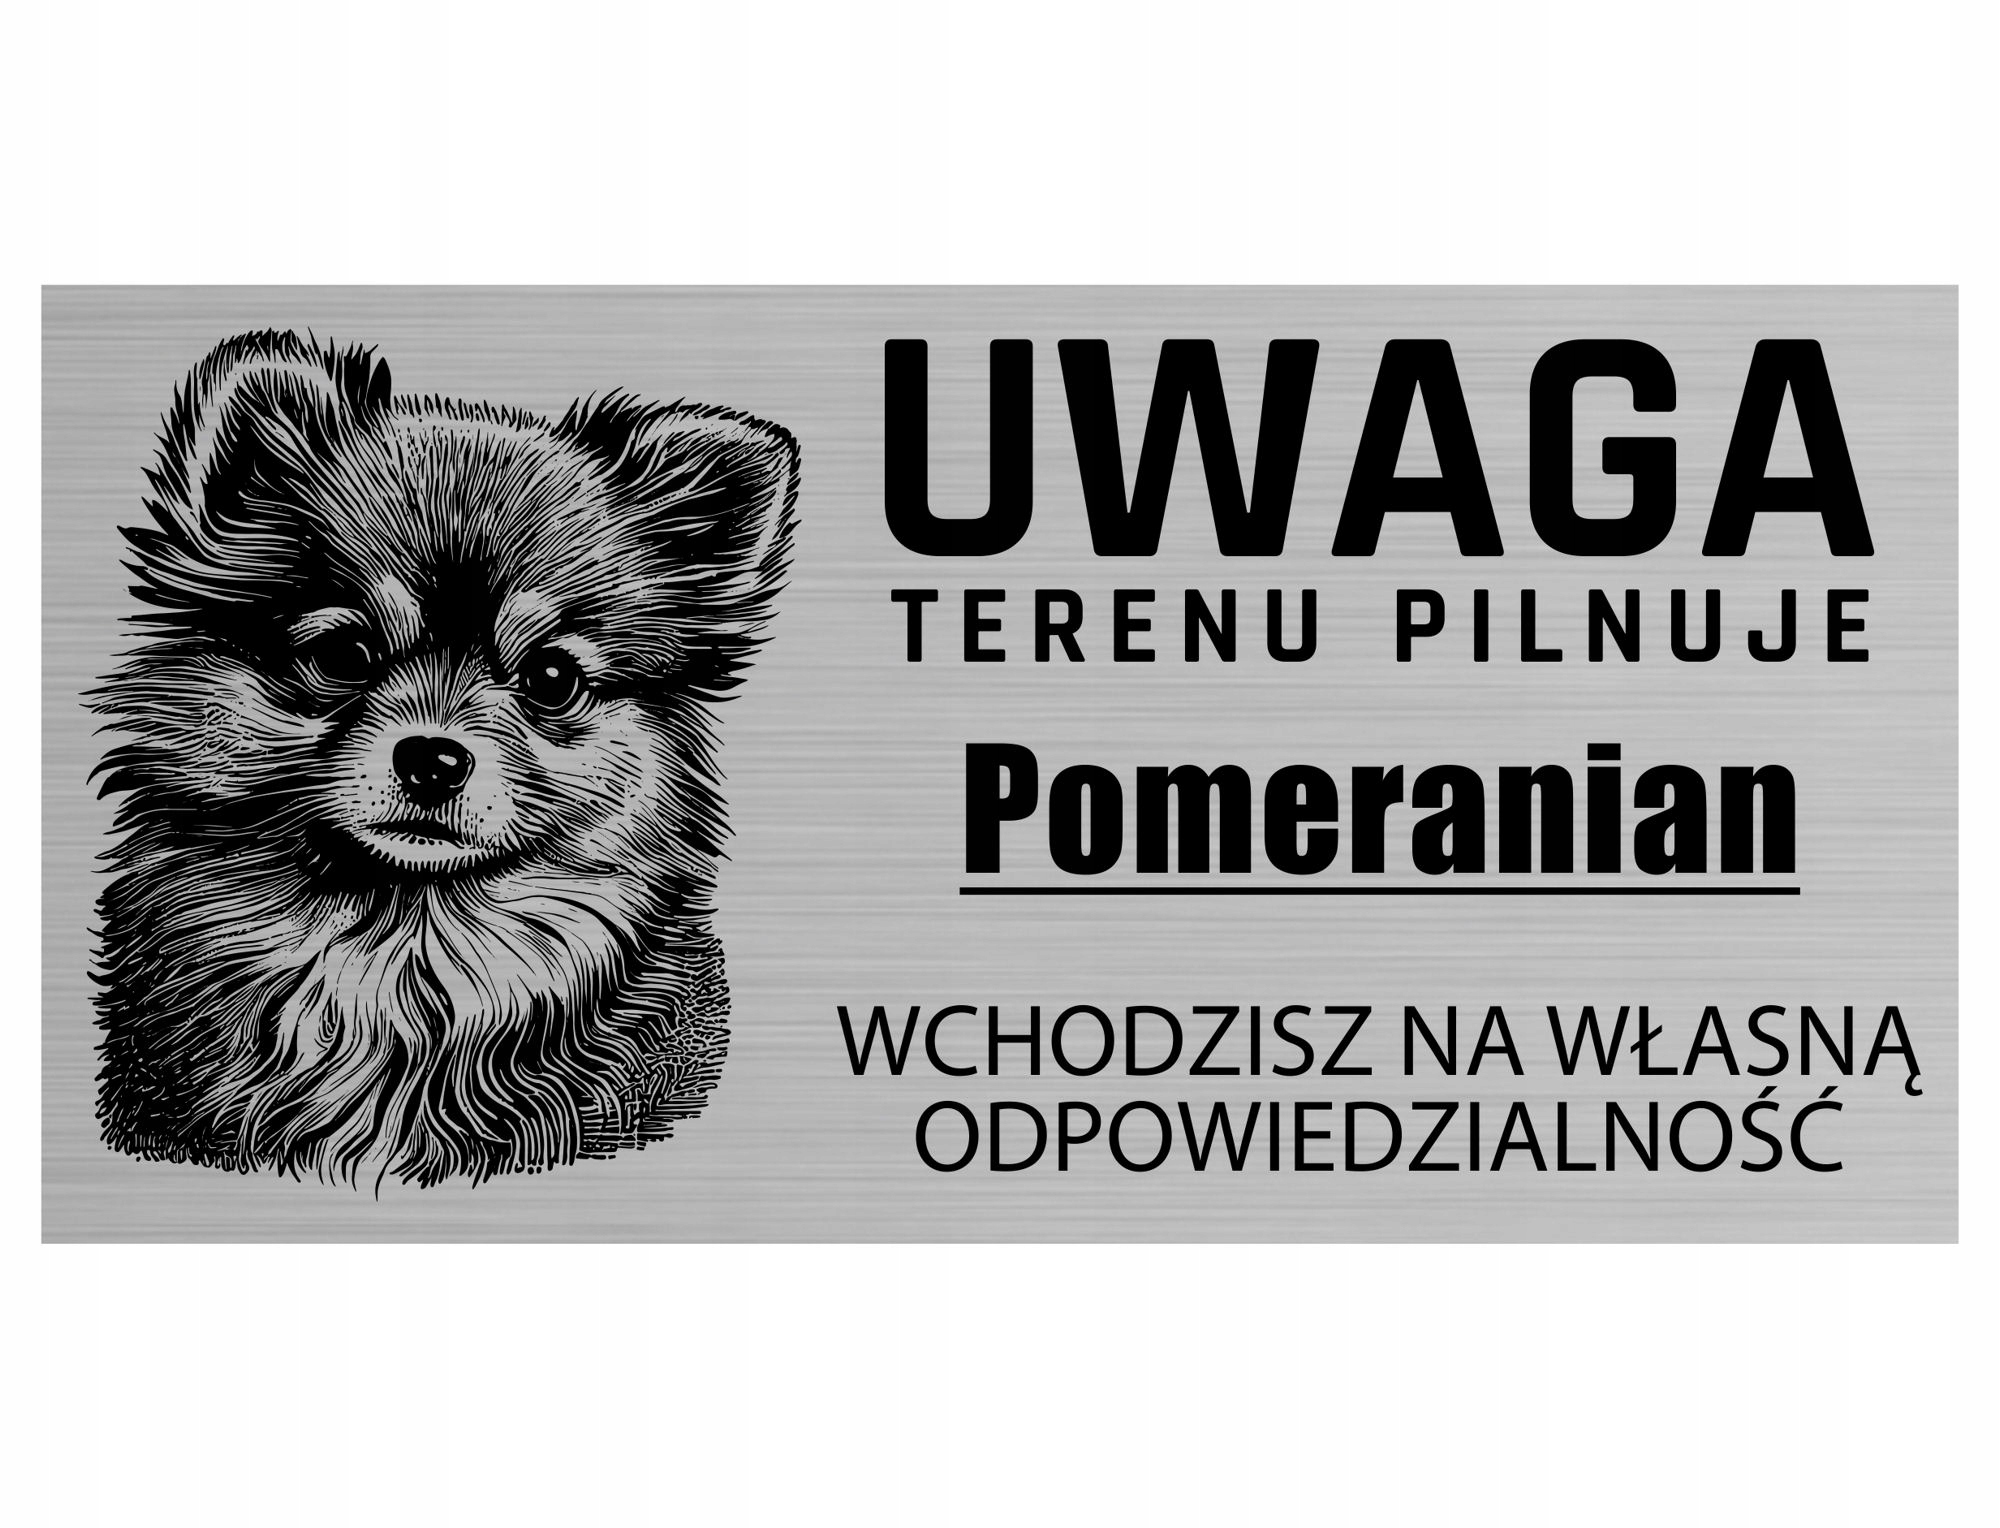 

Tabliczka Uwaga Pies Terenu Pilnuje Pomeranian